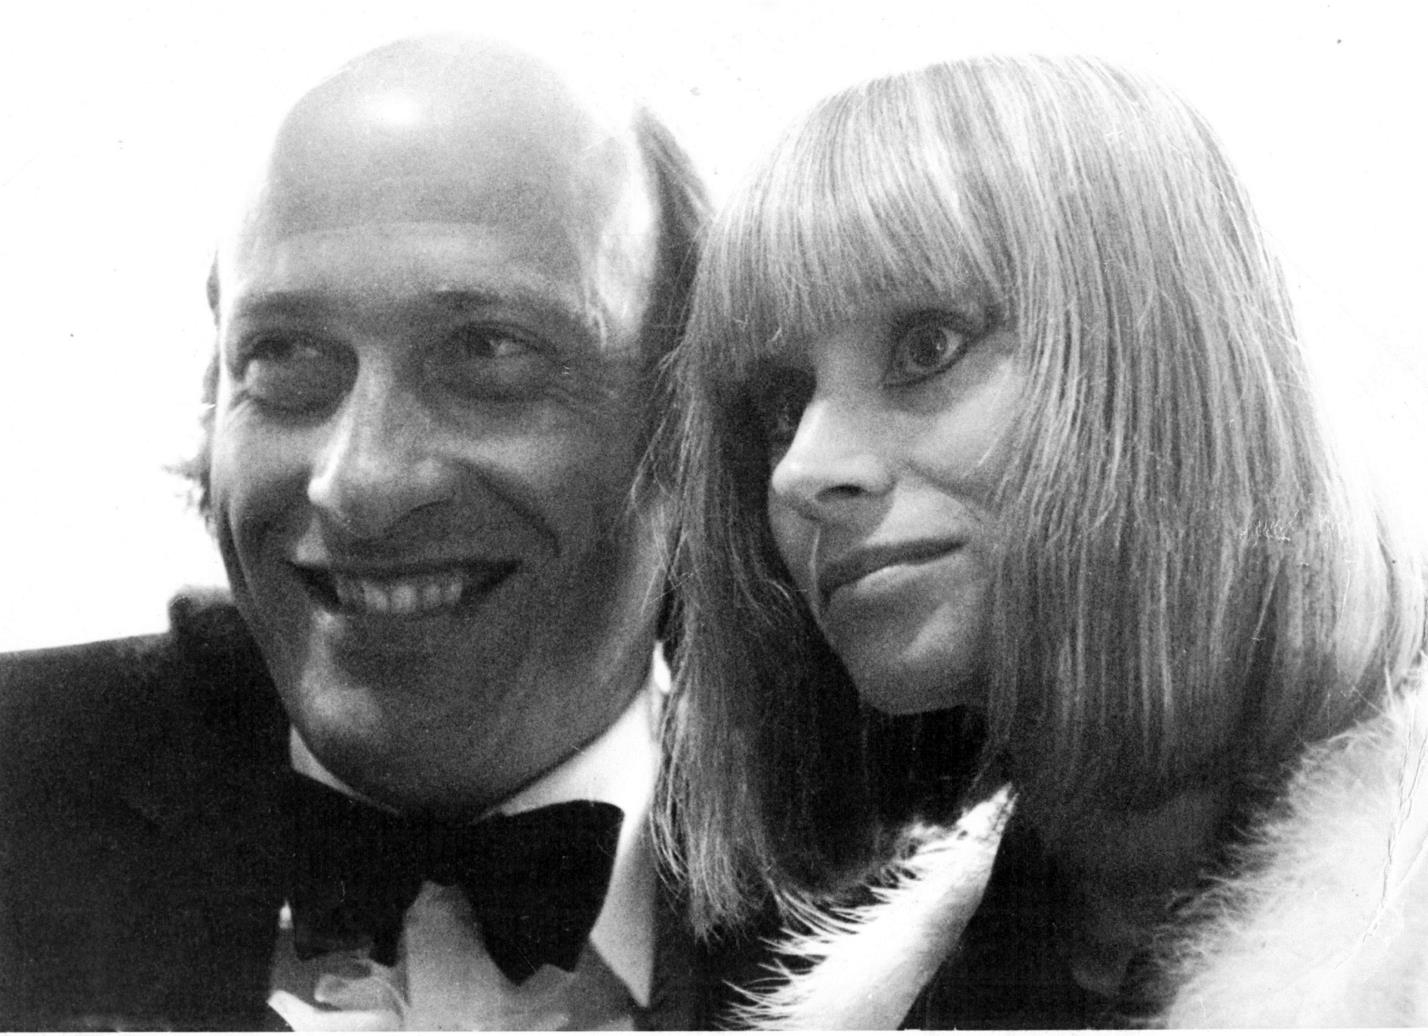 40 FAVORIETE FOTO VAN DE MAAND In de zomer van 1969 bezochten regisseur Richard Lester en actrice Rita Tushingham het Film Festival van Edinburgh voor de première van hun film The bedsitting room.